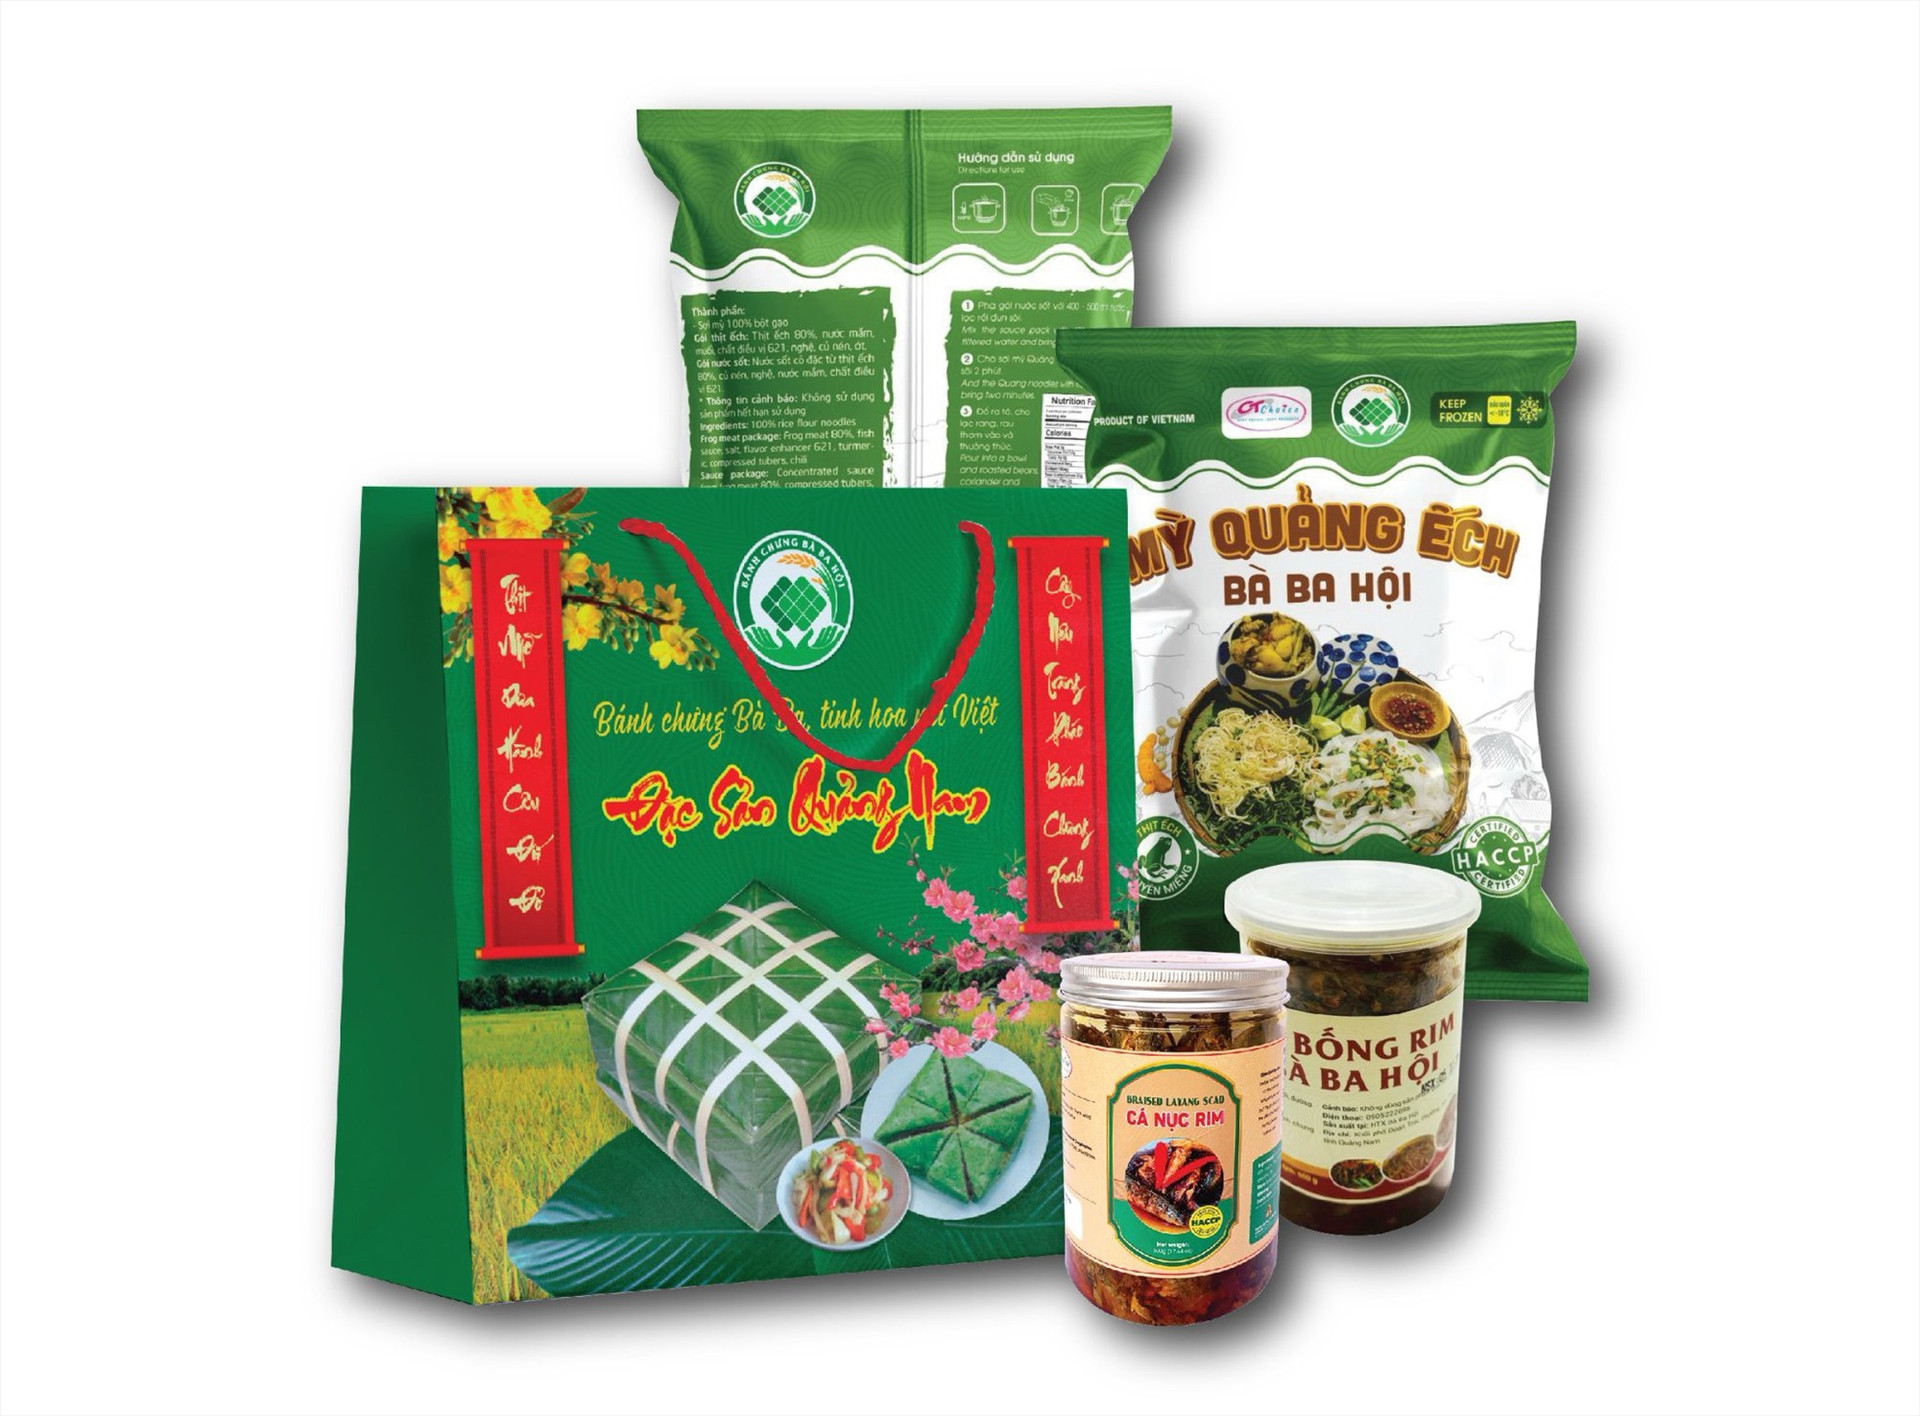 HTX Sản xuất nông sản thực phẩm Bà Bà Hội (Tam Kỳ) hiện có nhiều loại sản phẩm. Ảnh: HTX